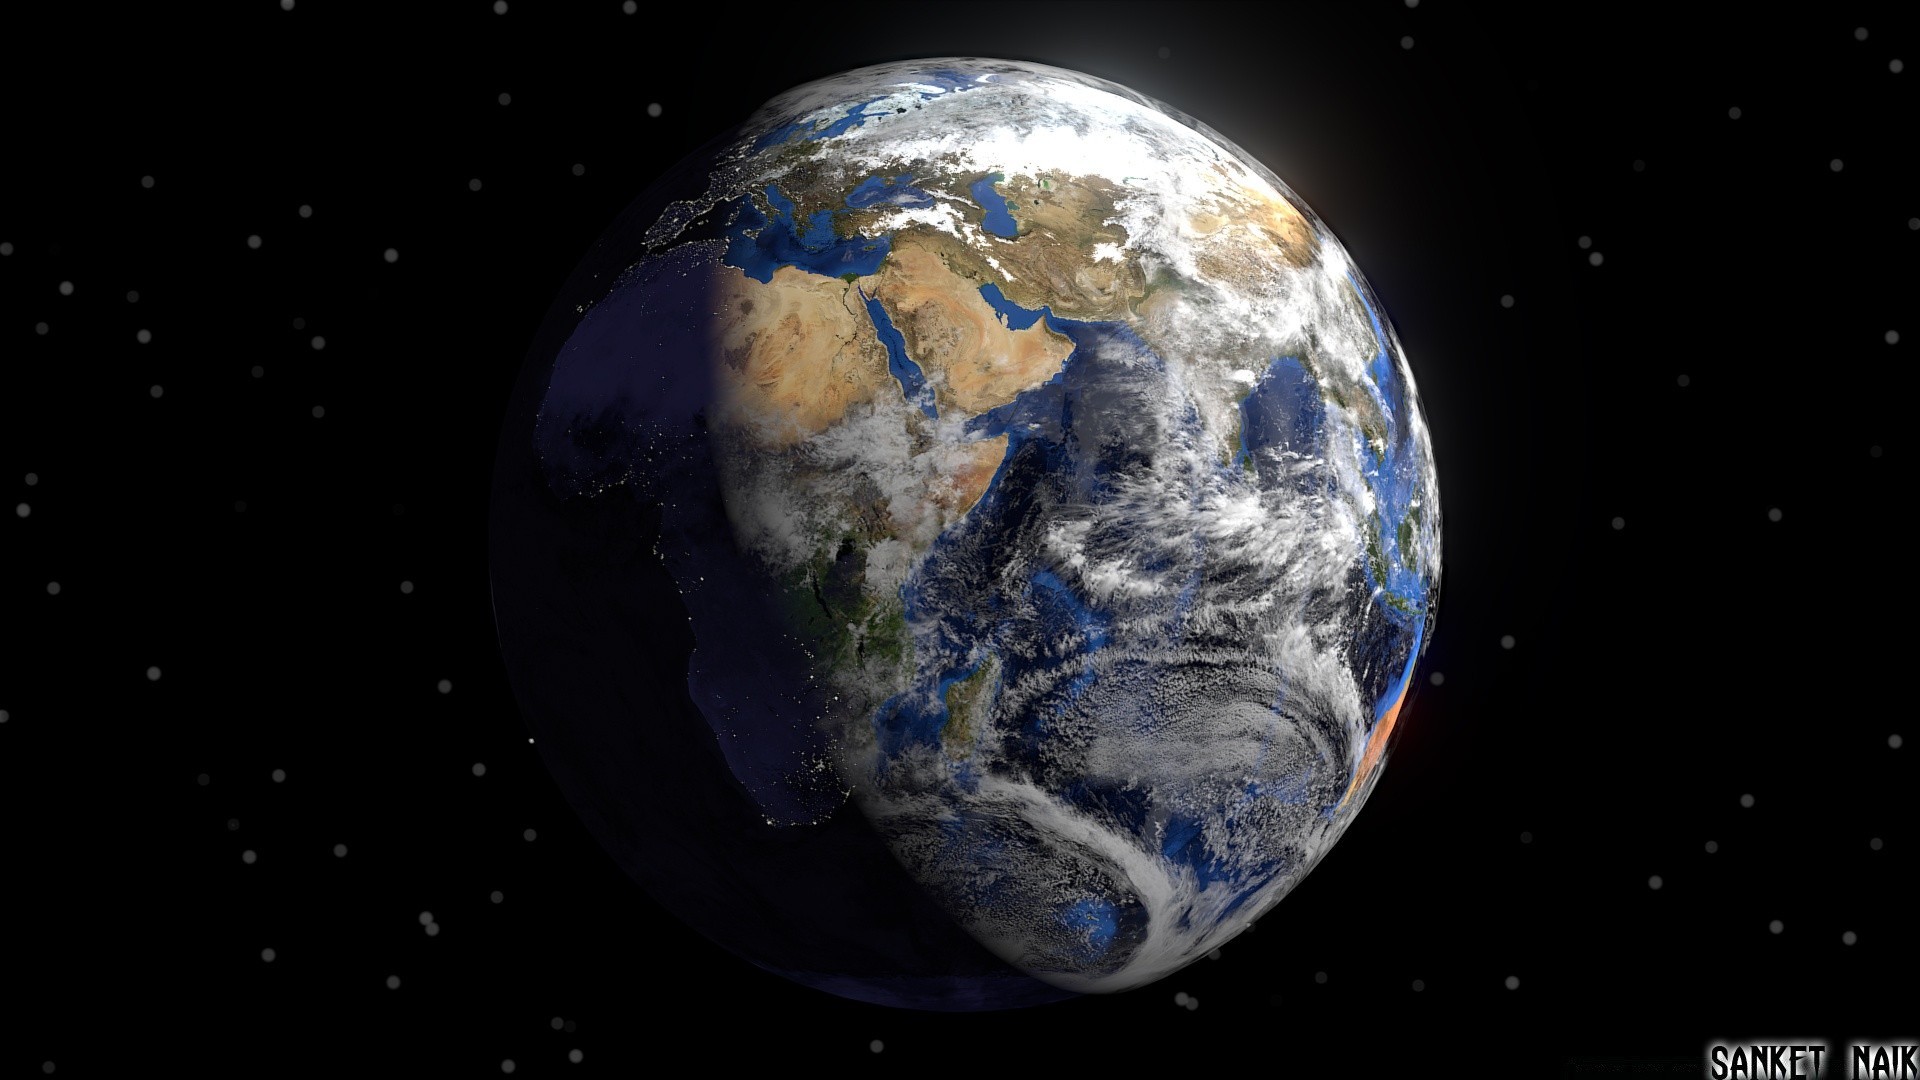 3d графика планеты шарообразные астрономия вселенная сферически луна атмосфера пространство разведка наука орбиты сфера карте галактика континент спутниковое география солнечный астрология космос